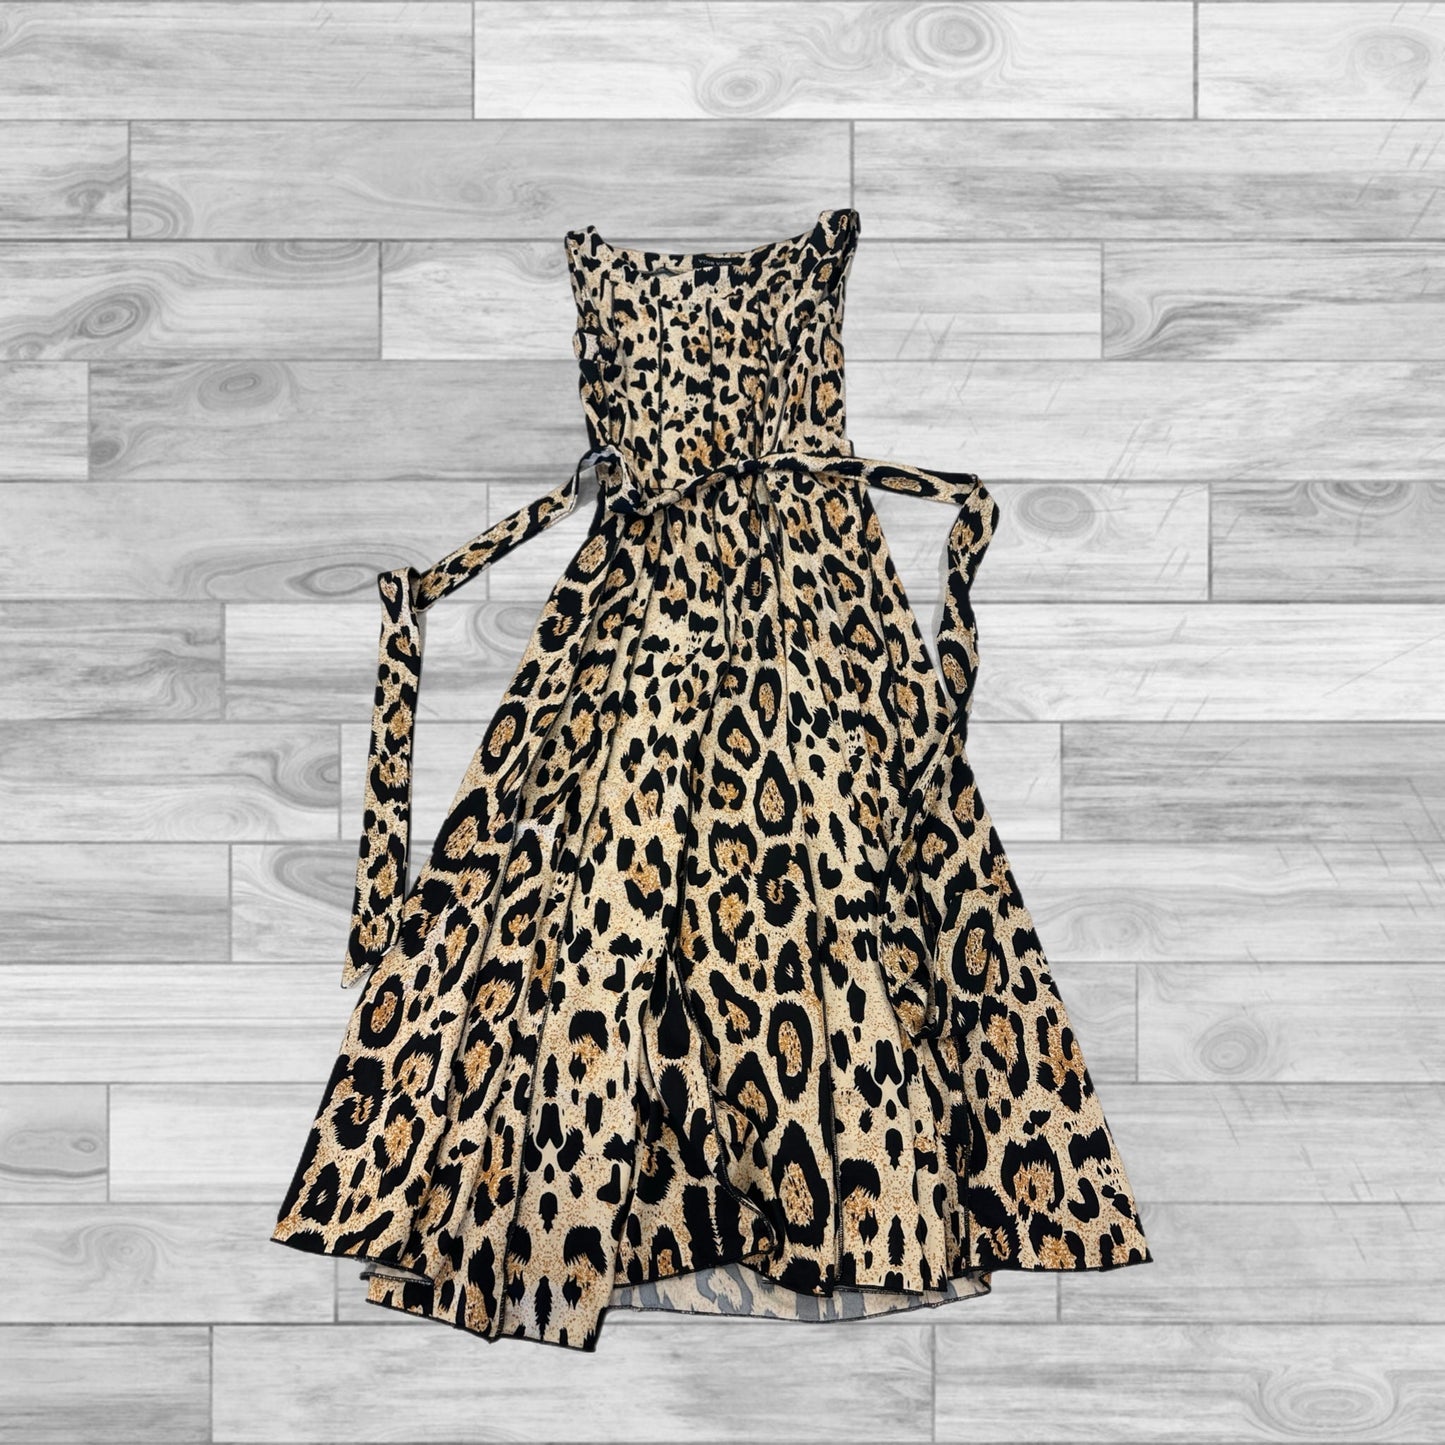 Leopard Print Dress Casual Short Voir Voir, Size 8